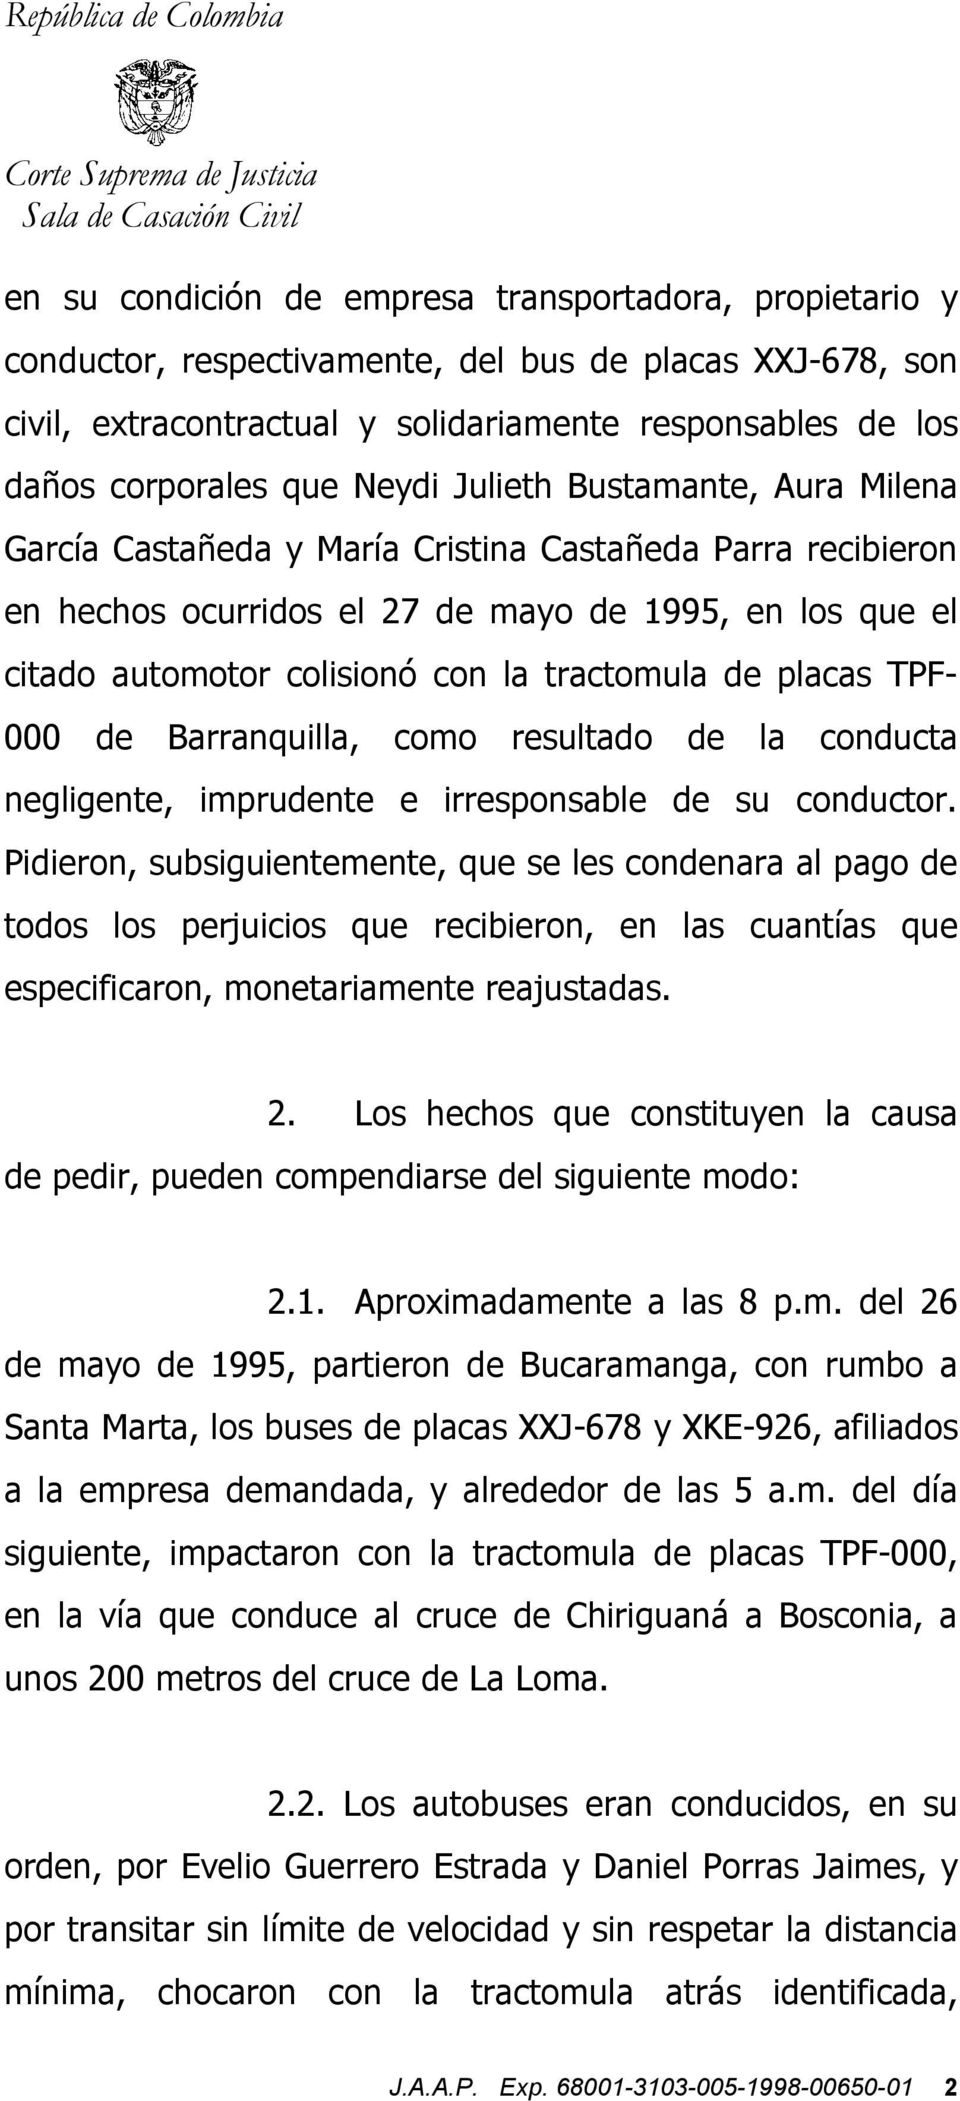 tractomula de placas TPF- 000 de Barranquilla, como resultado de la conducta negligente, imprudente e irresponsable de su conductor.